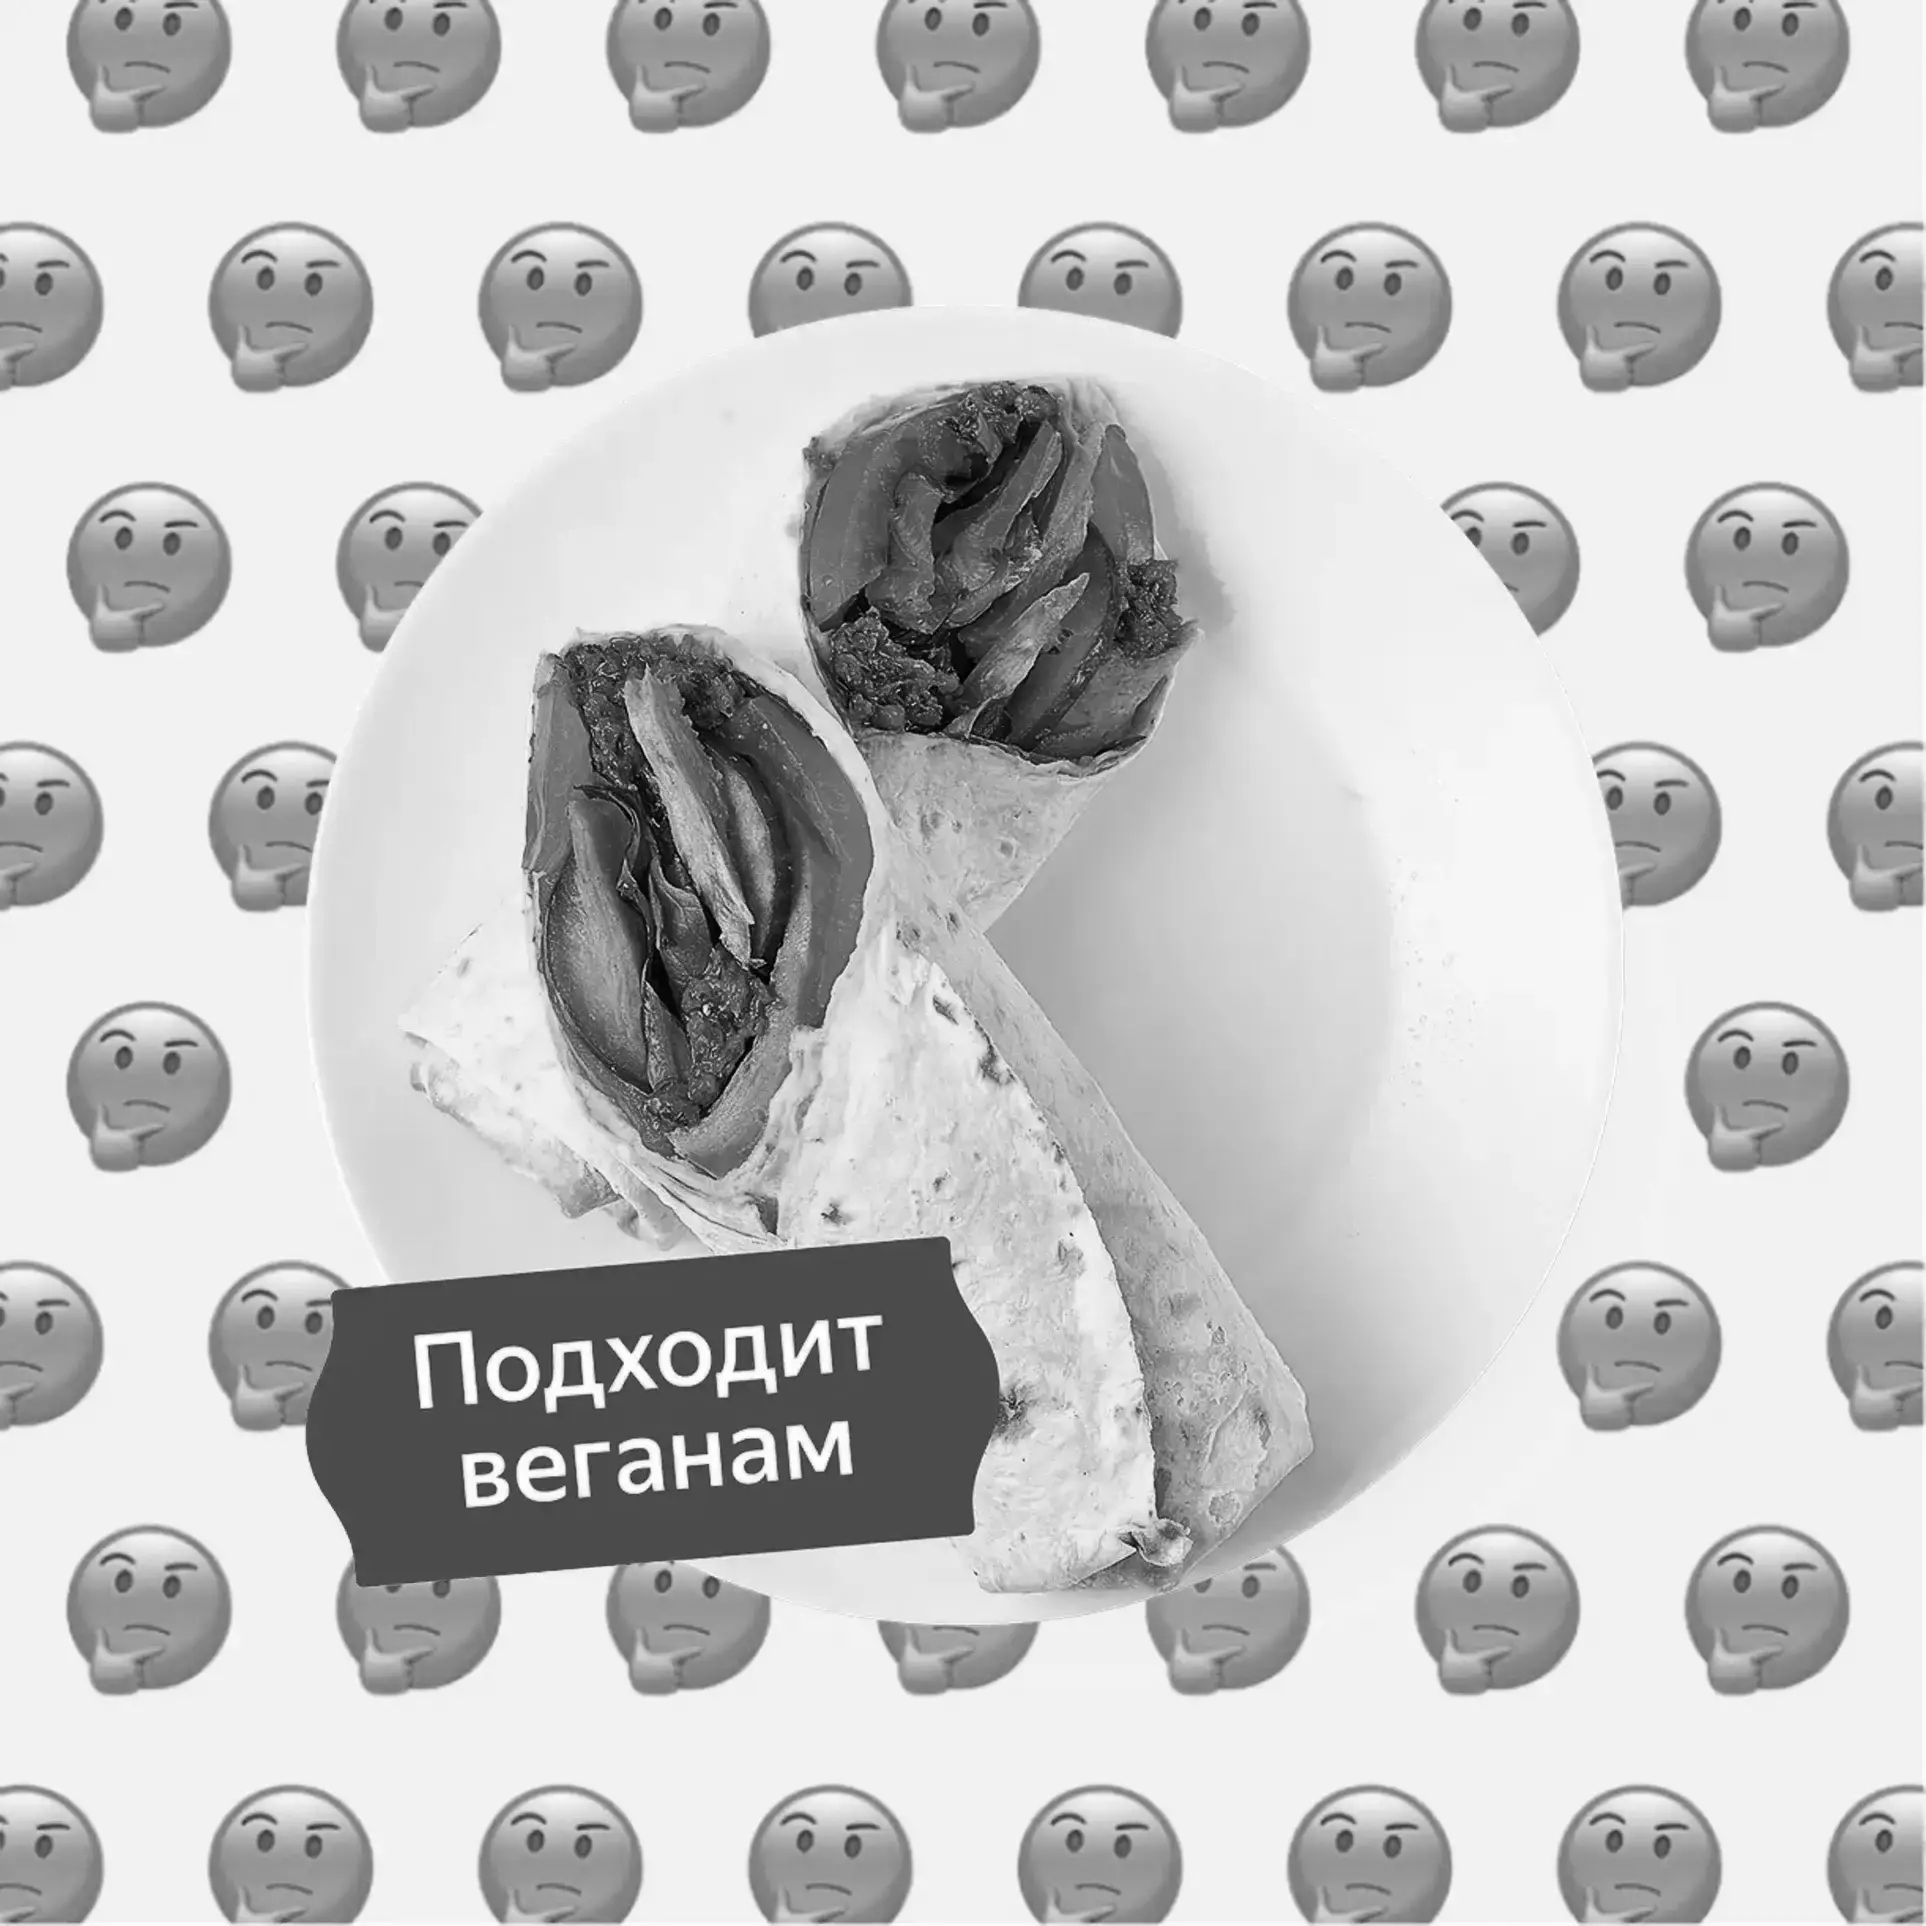 Архив: По вегану ли ролл-сэндвич Песто с растительным филе Вместо курицы из Яндекс Лавки?